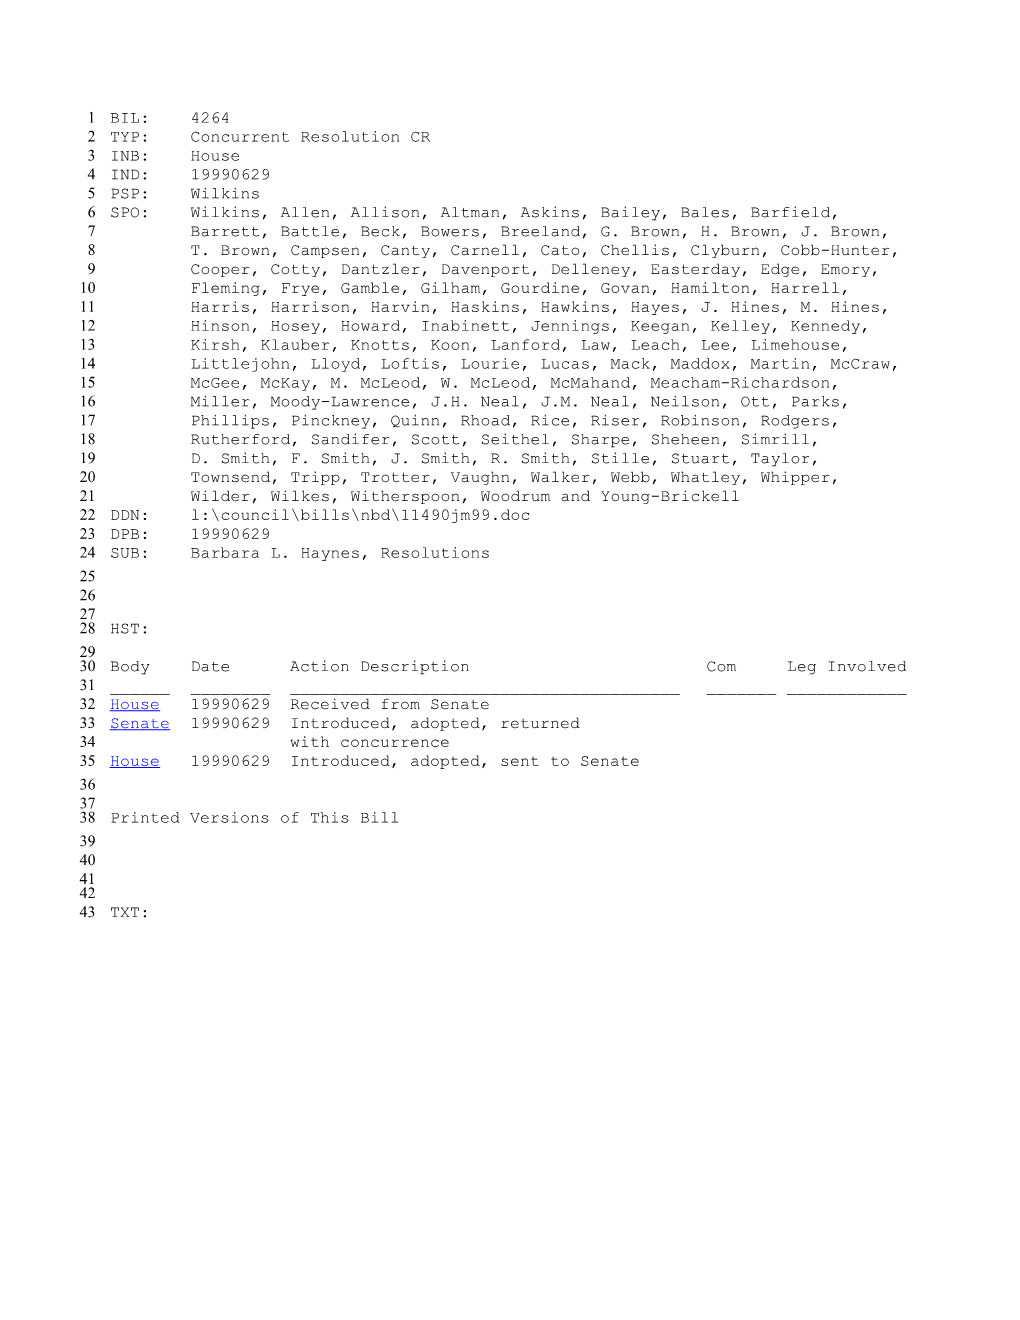 1999-2000 Bill 4264: Barbara L. Haynes, Resolutions - South Carolina Legislature Online